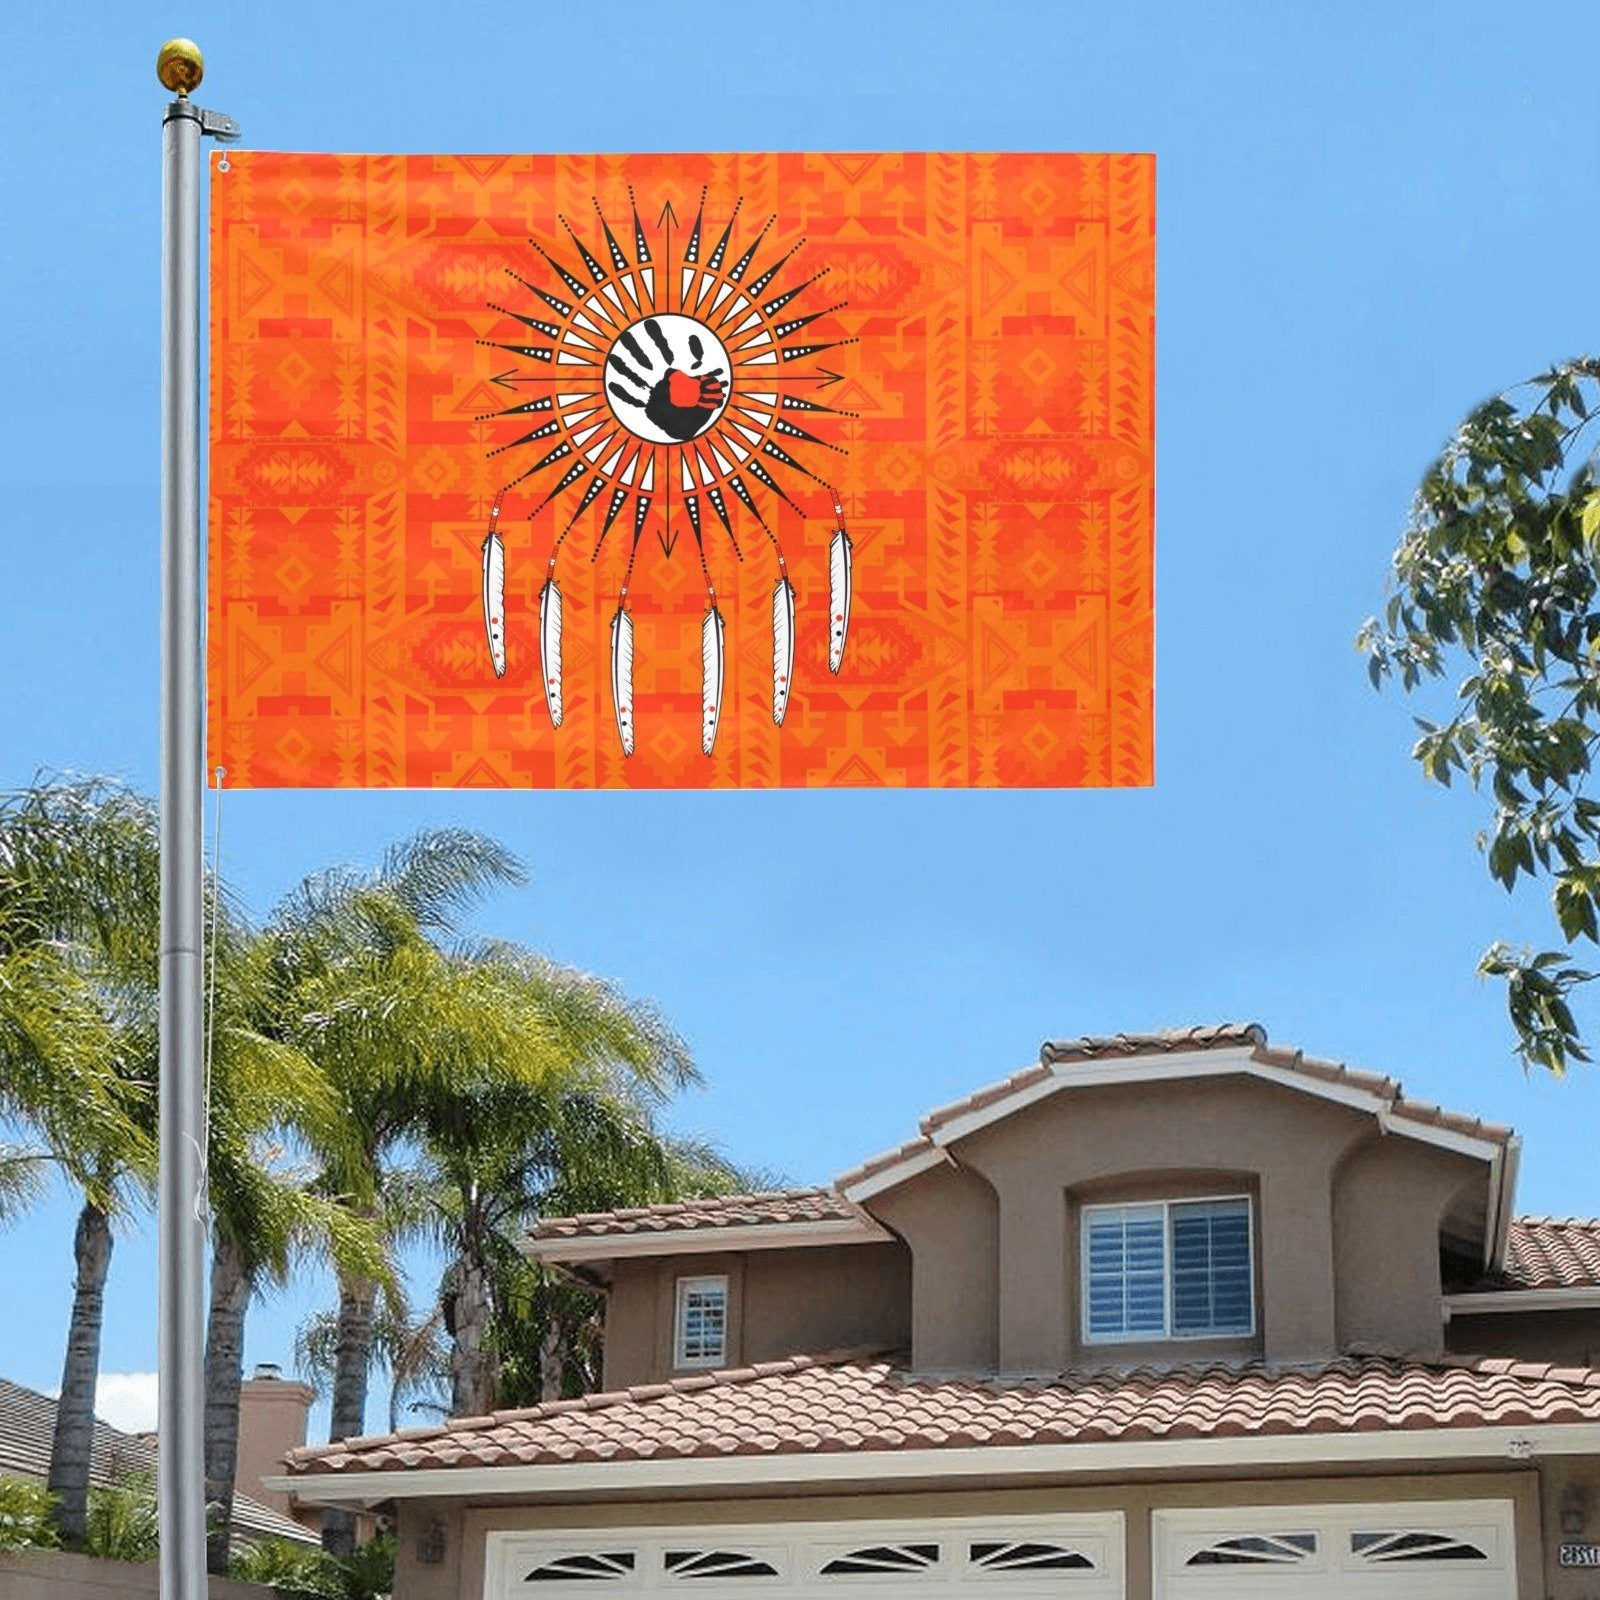 Chiefs Mountain Orange Feather Directions Garden Flag 70"x47" Garden Flag 70"x47" e-joyer 